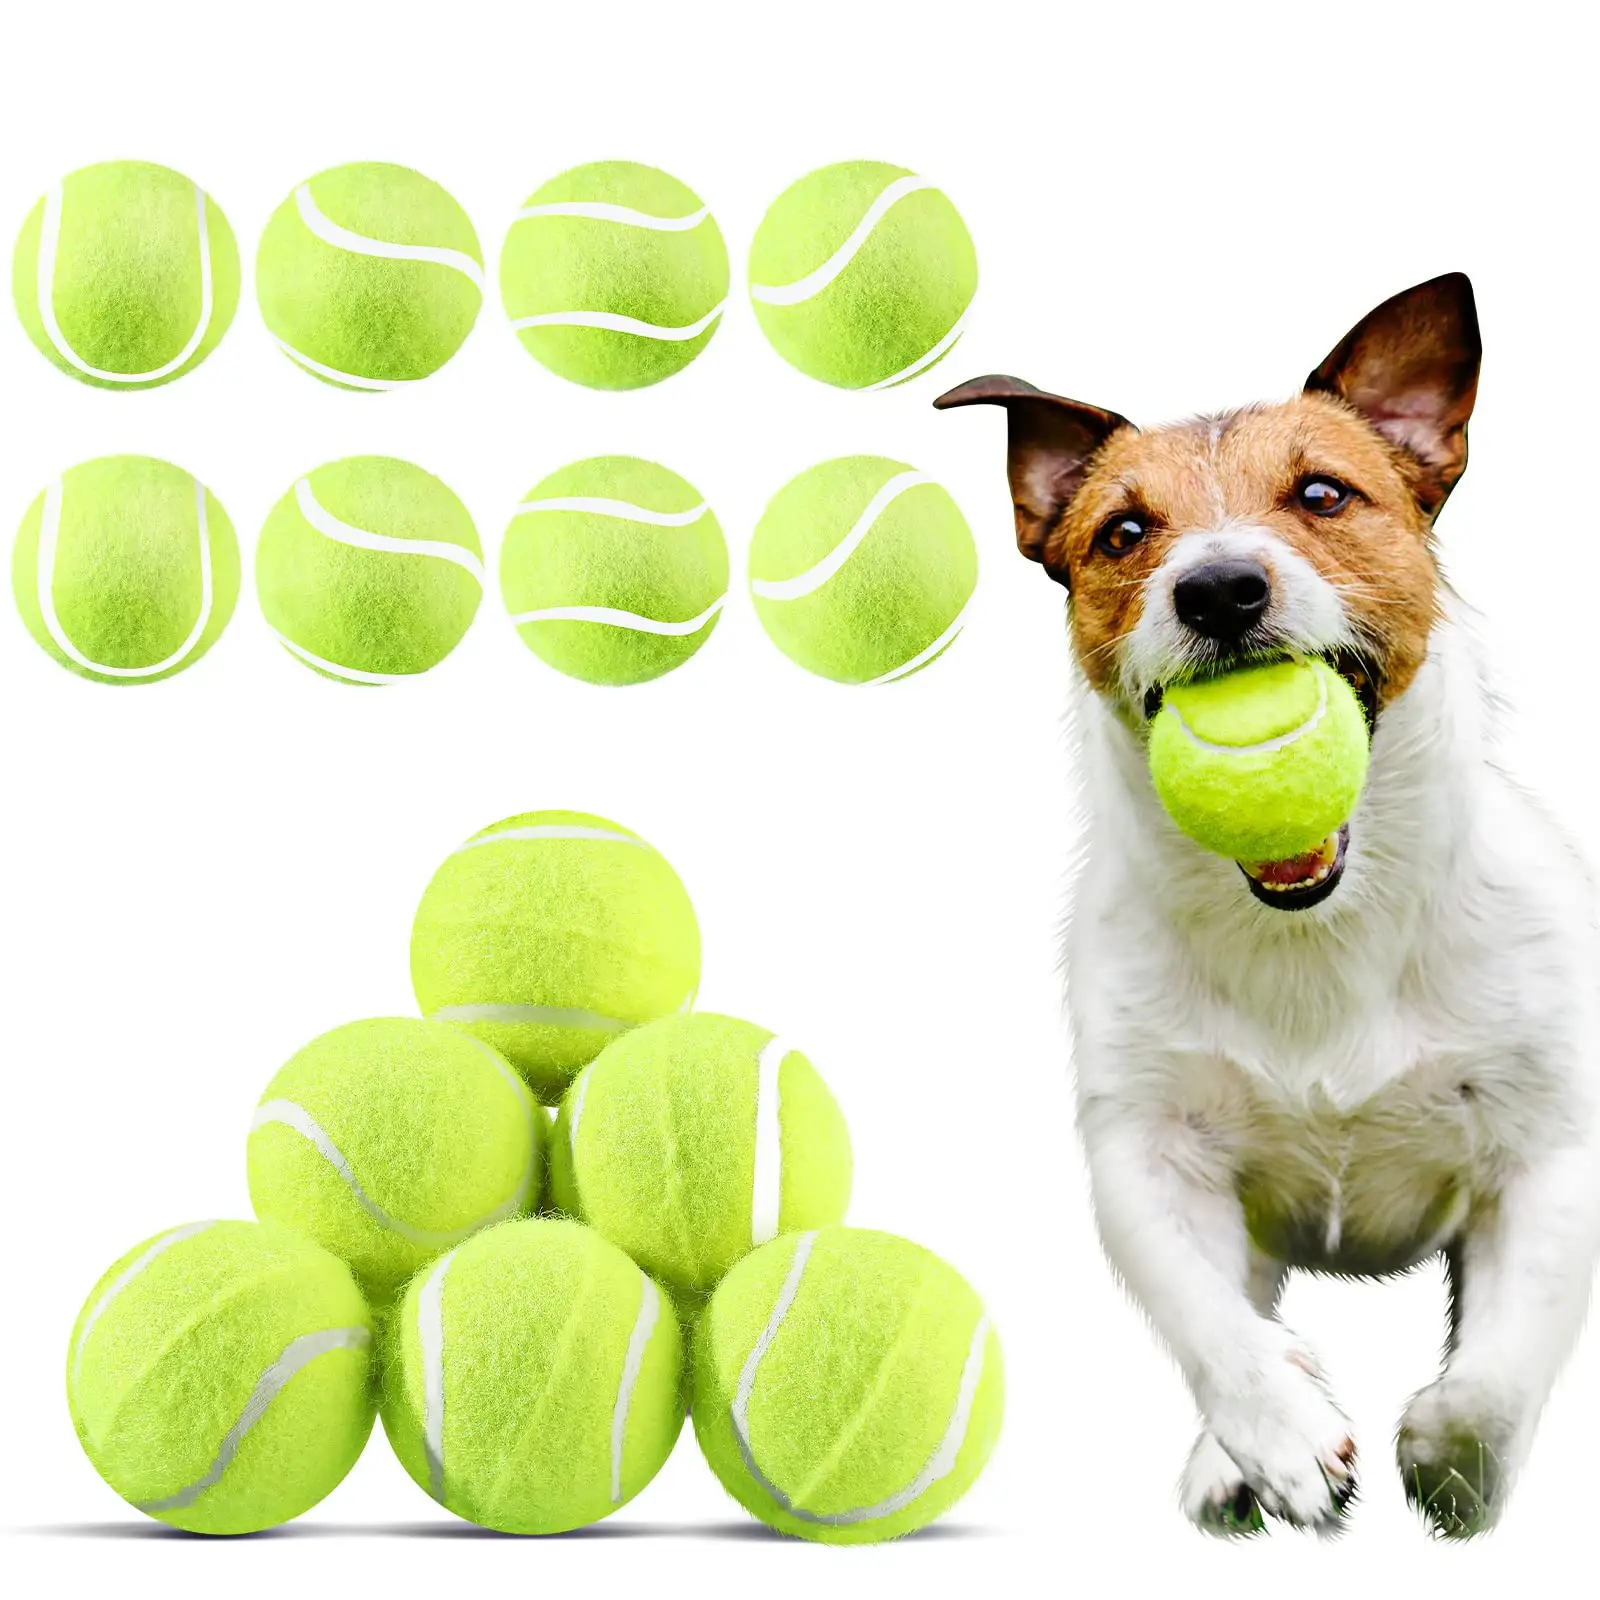 Stok pabrik logo kustom 2.5 "Diameter karet ramah lingkungan bola tenis hewan peliharaan untuk anjing hewan peliharaan aman mainan anjing untuk latihan latihan